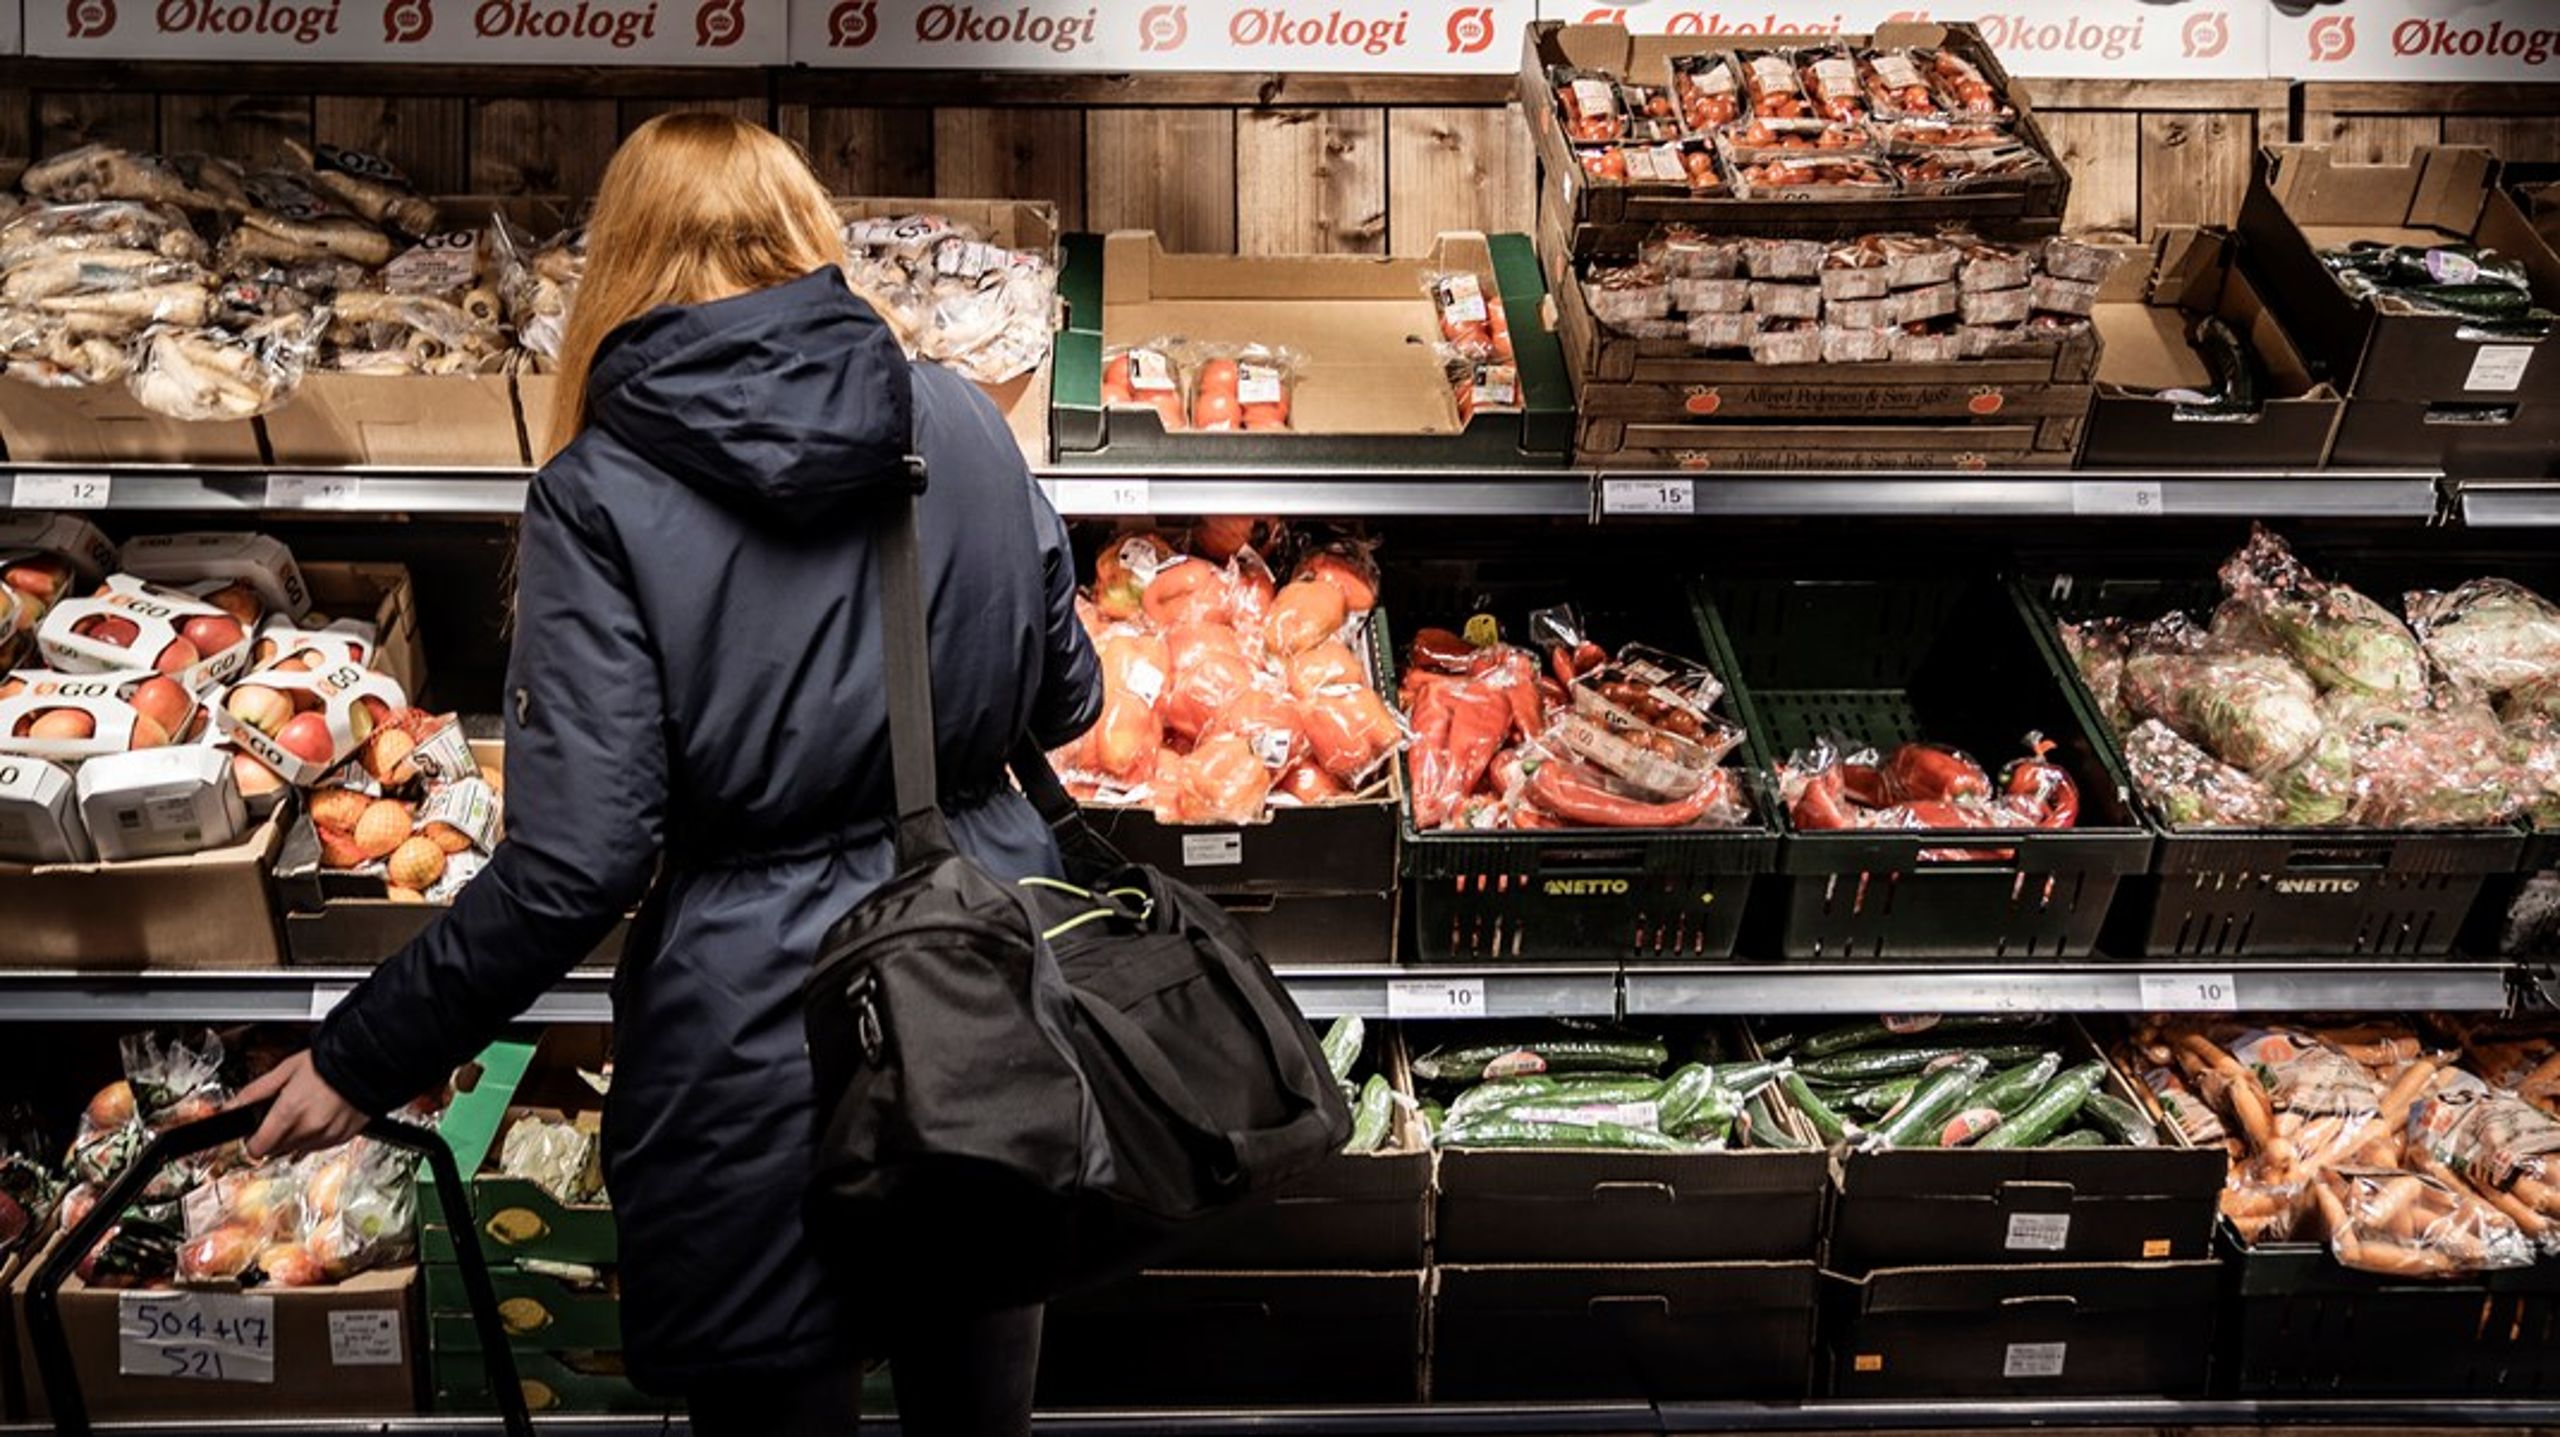 Supermarkeder og detailhandlere spiller en vigtig rolle, da de&nbsp;kan fremhæve sæsonens lokale produkter til forbrugerne, skriver Jesper Zeihlund.